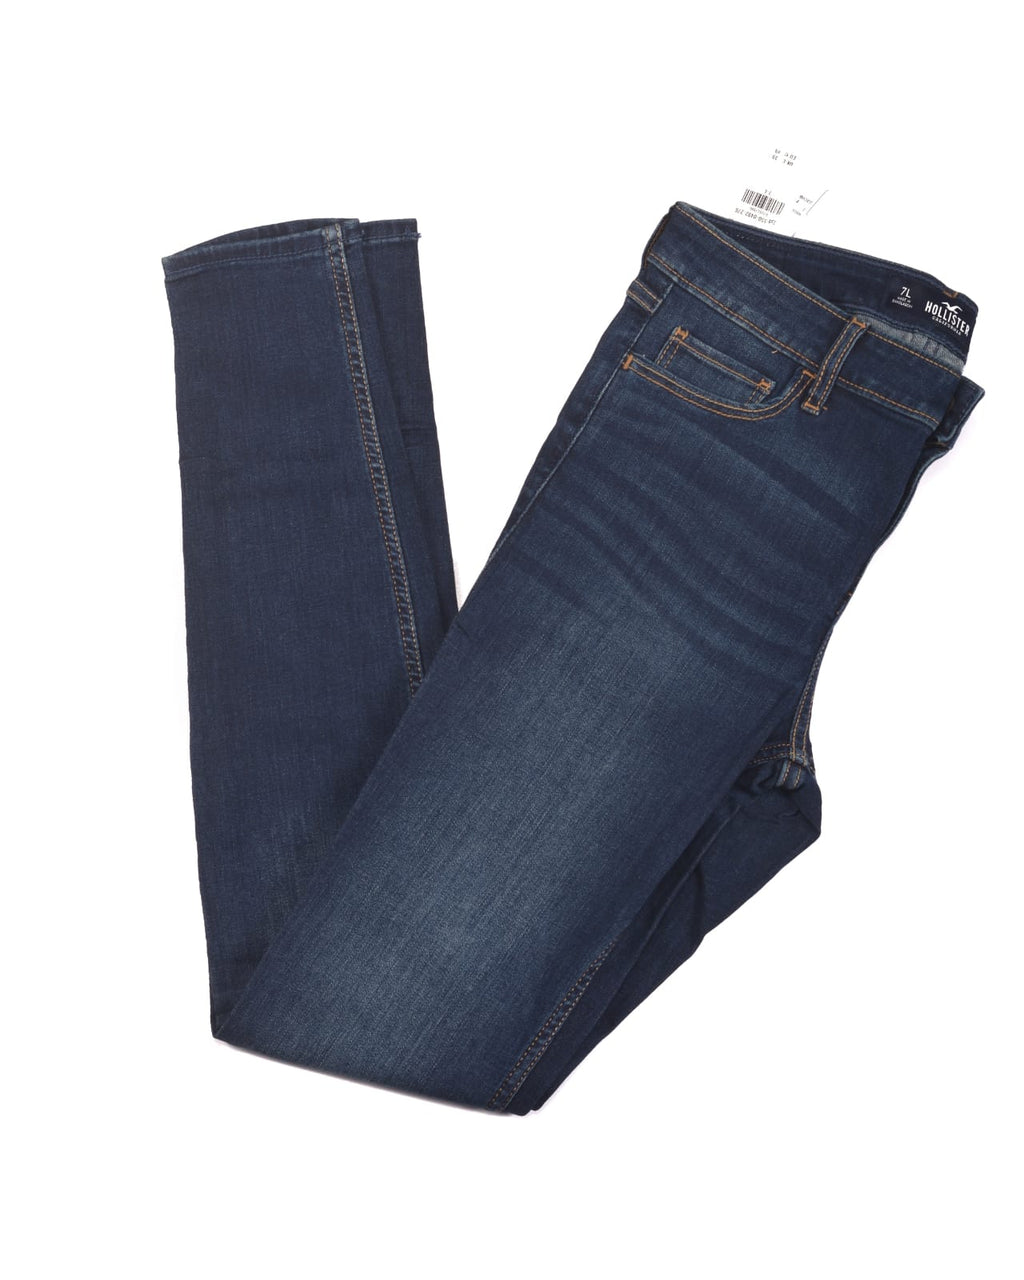 Hollister High-Rise Super Skinny Classic Stretch Dark Wash Jeans